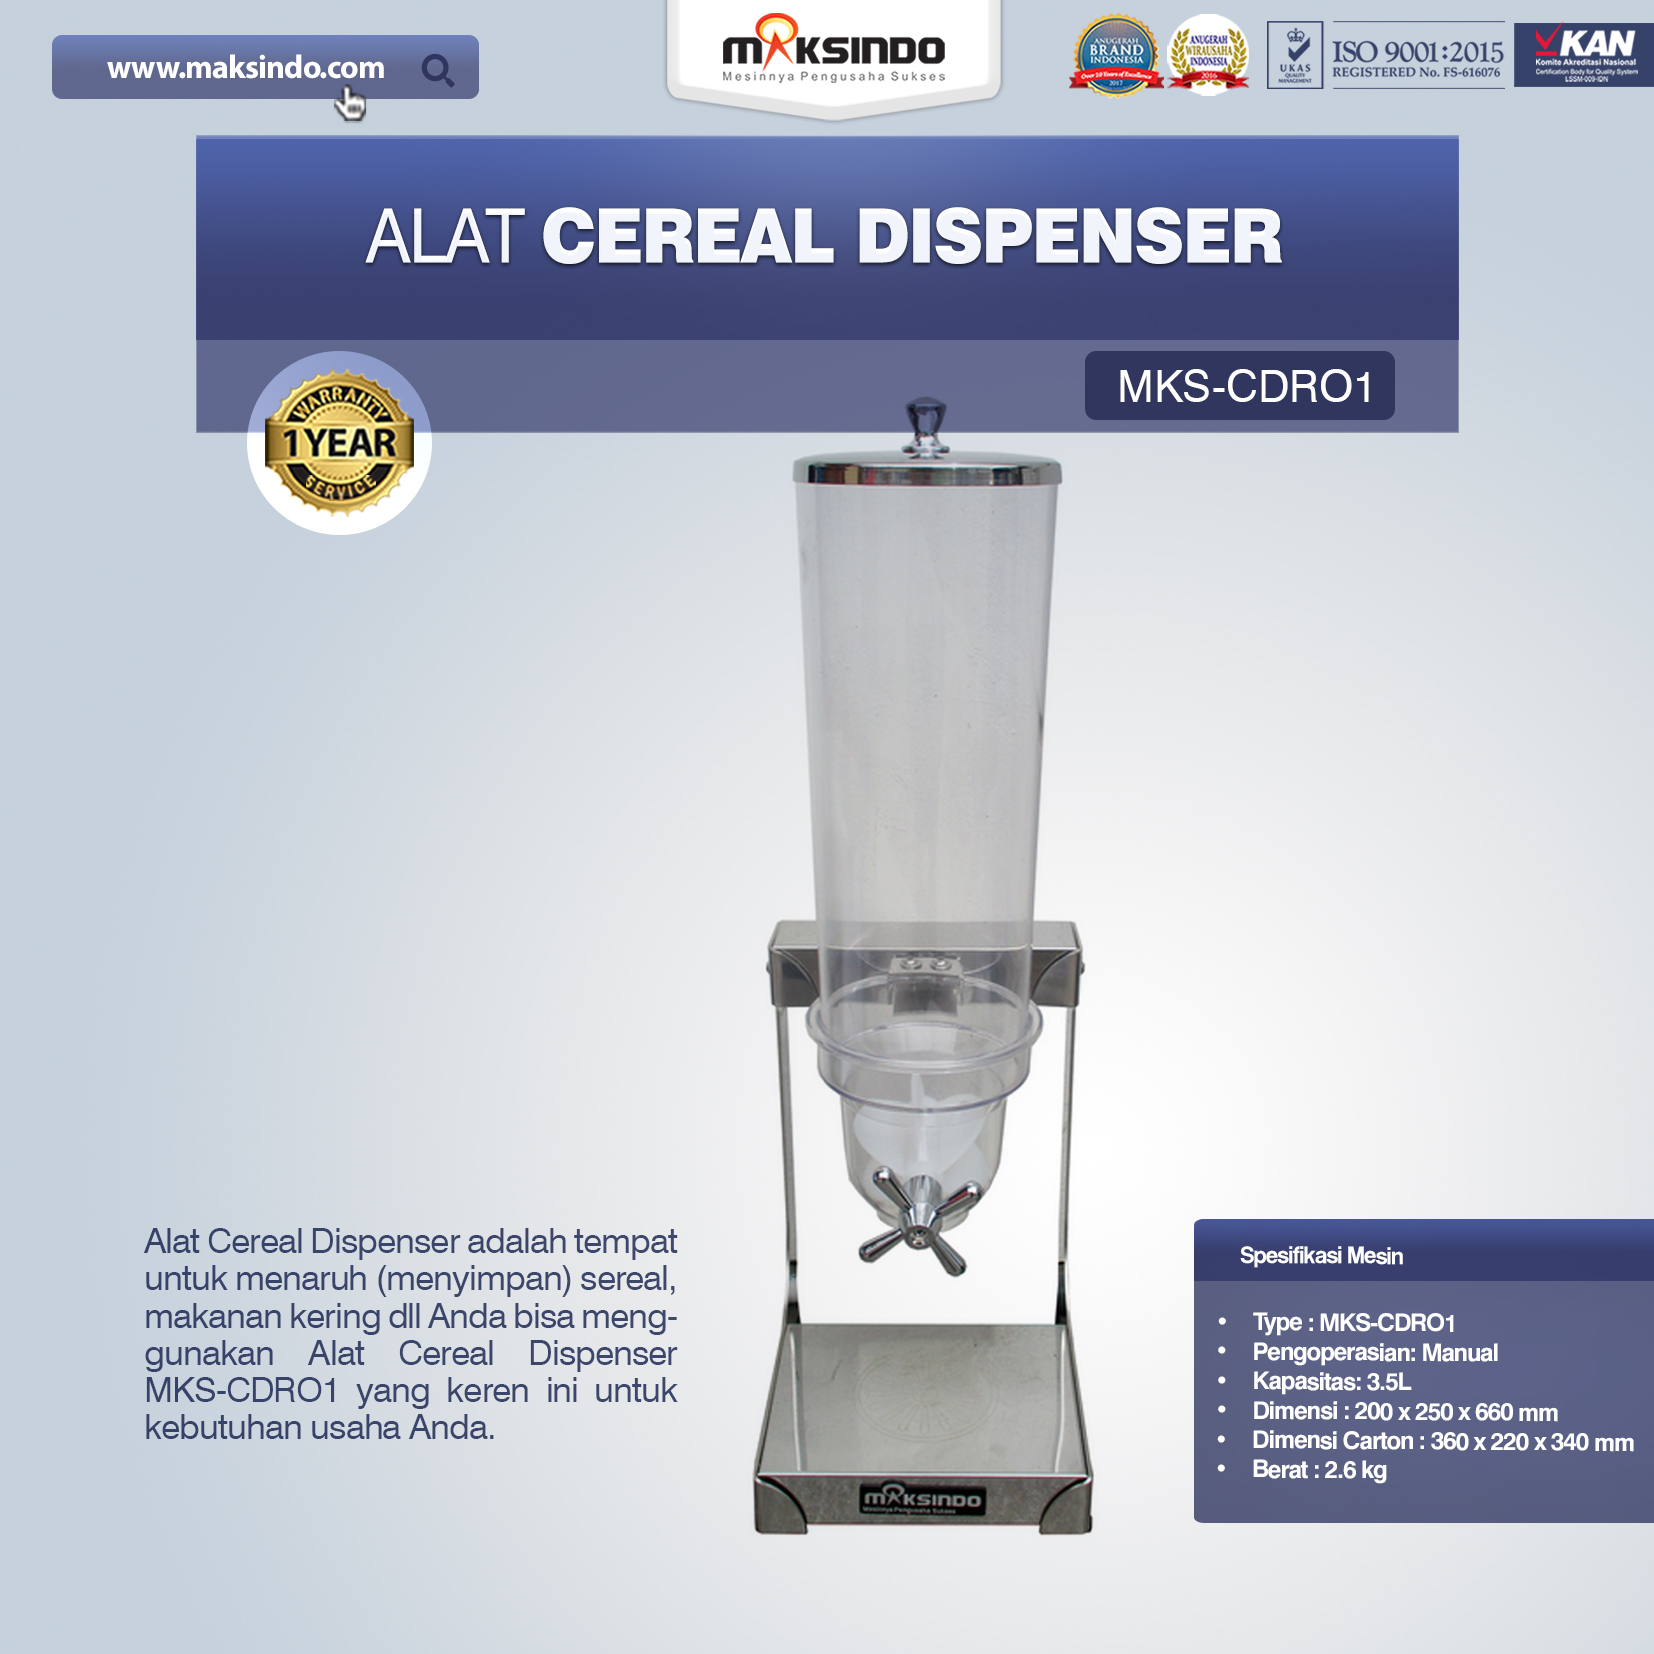 Jual Alat Cereal Dispenser MKS-CDR01 Di Pekanbaru